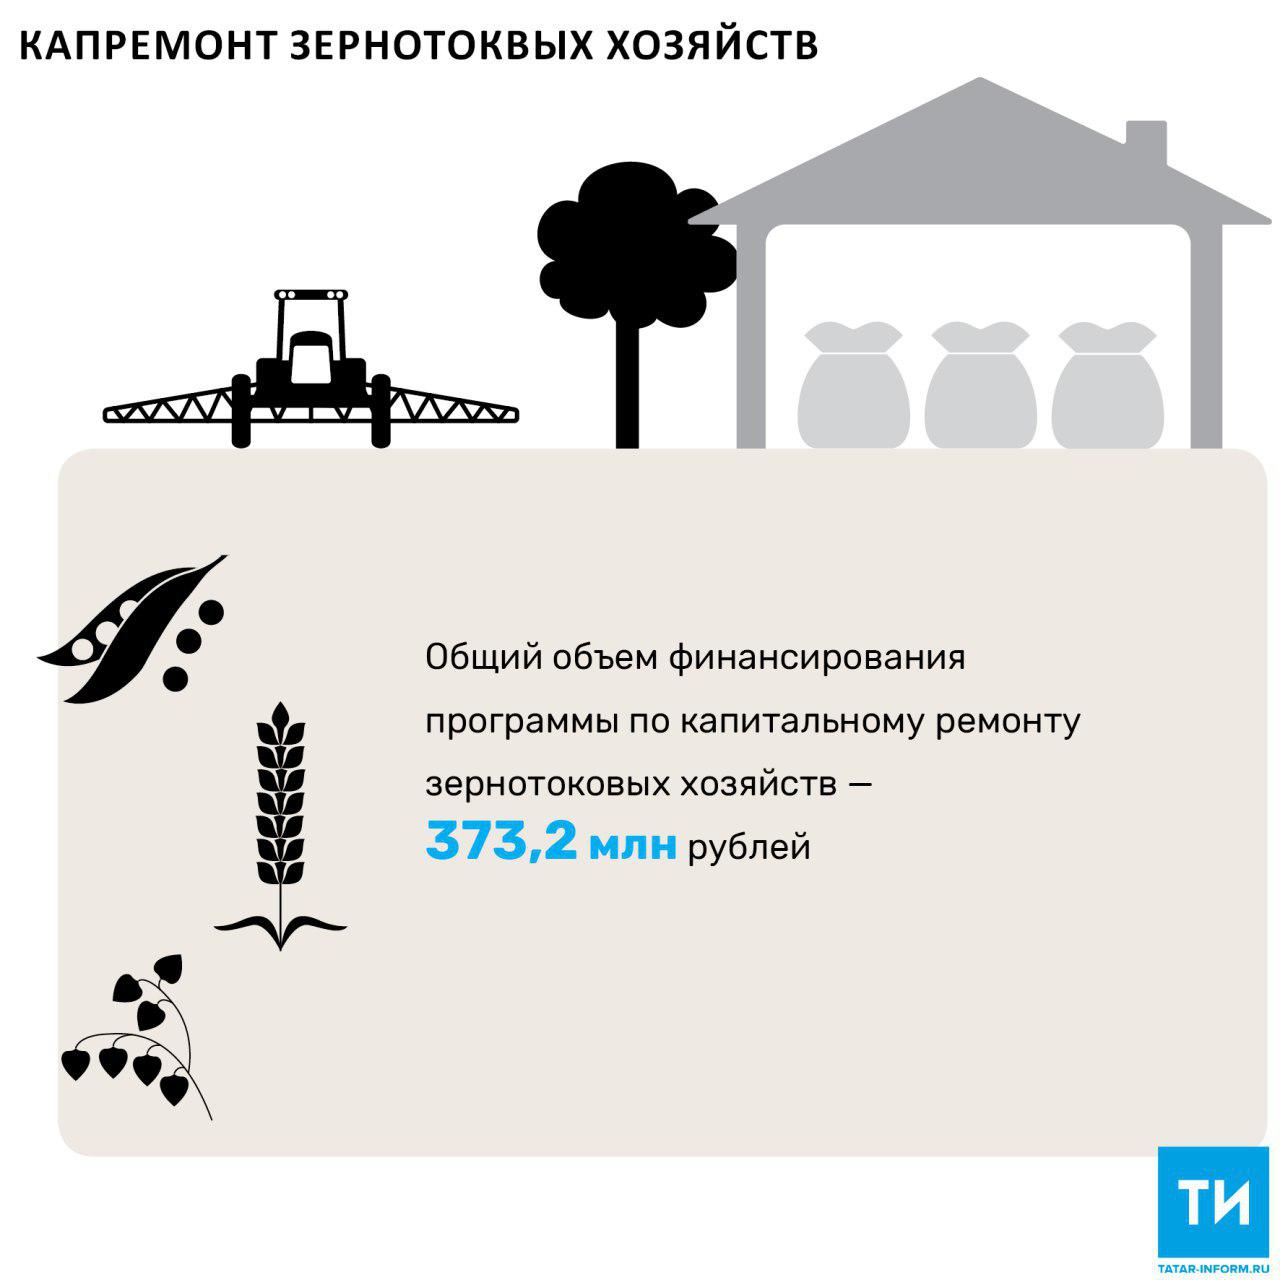 С 2018 года Татарстан начнет программу капитального ремонта зернотоковых хозяйств